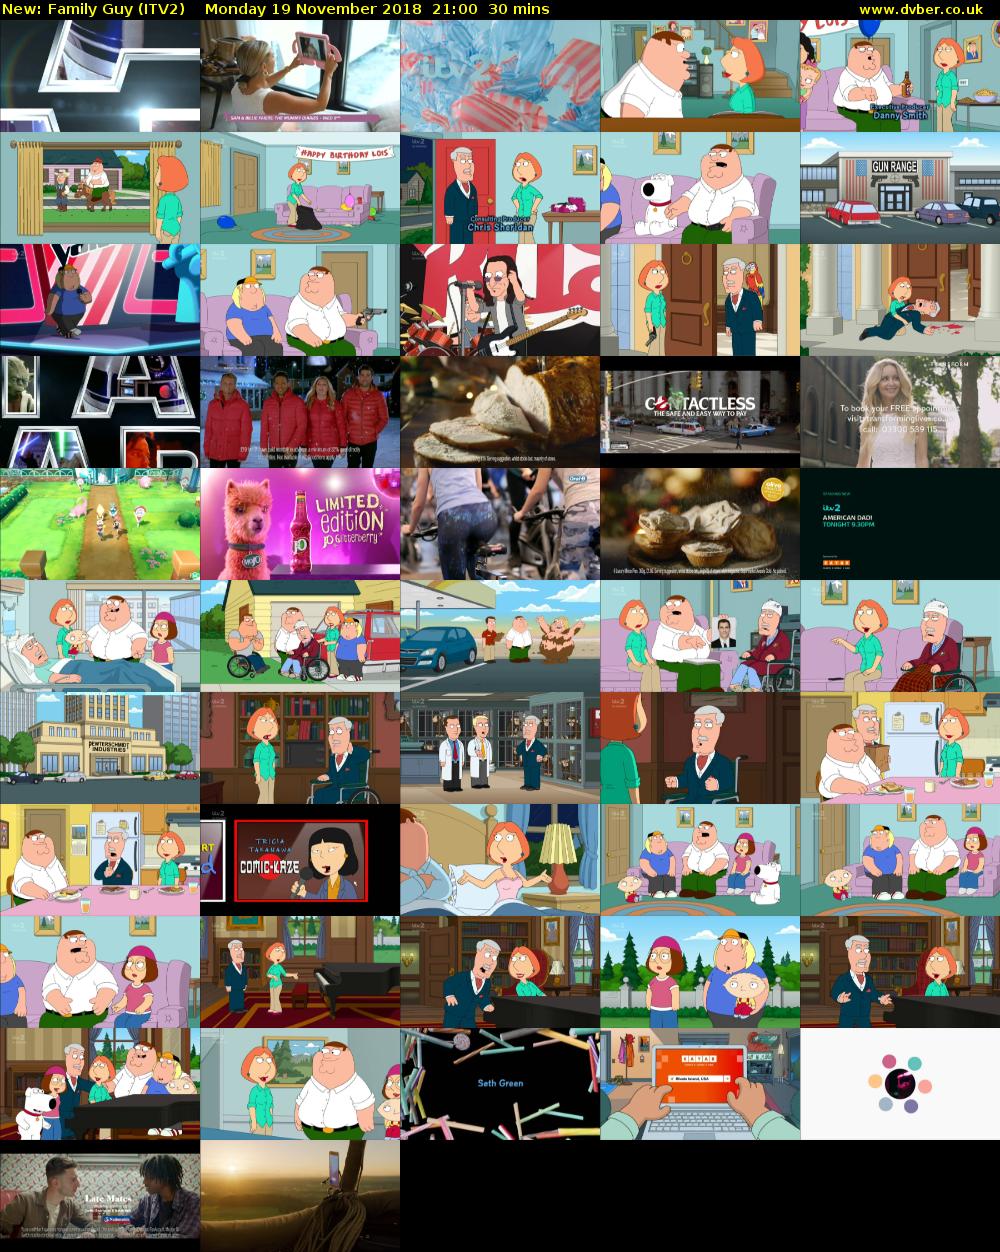 Family Guy (ITV2) Monday 19 November 2018 21:00 - 21:30